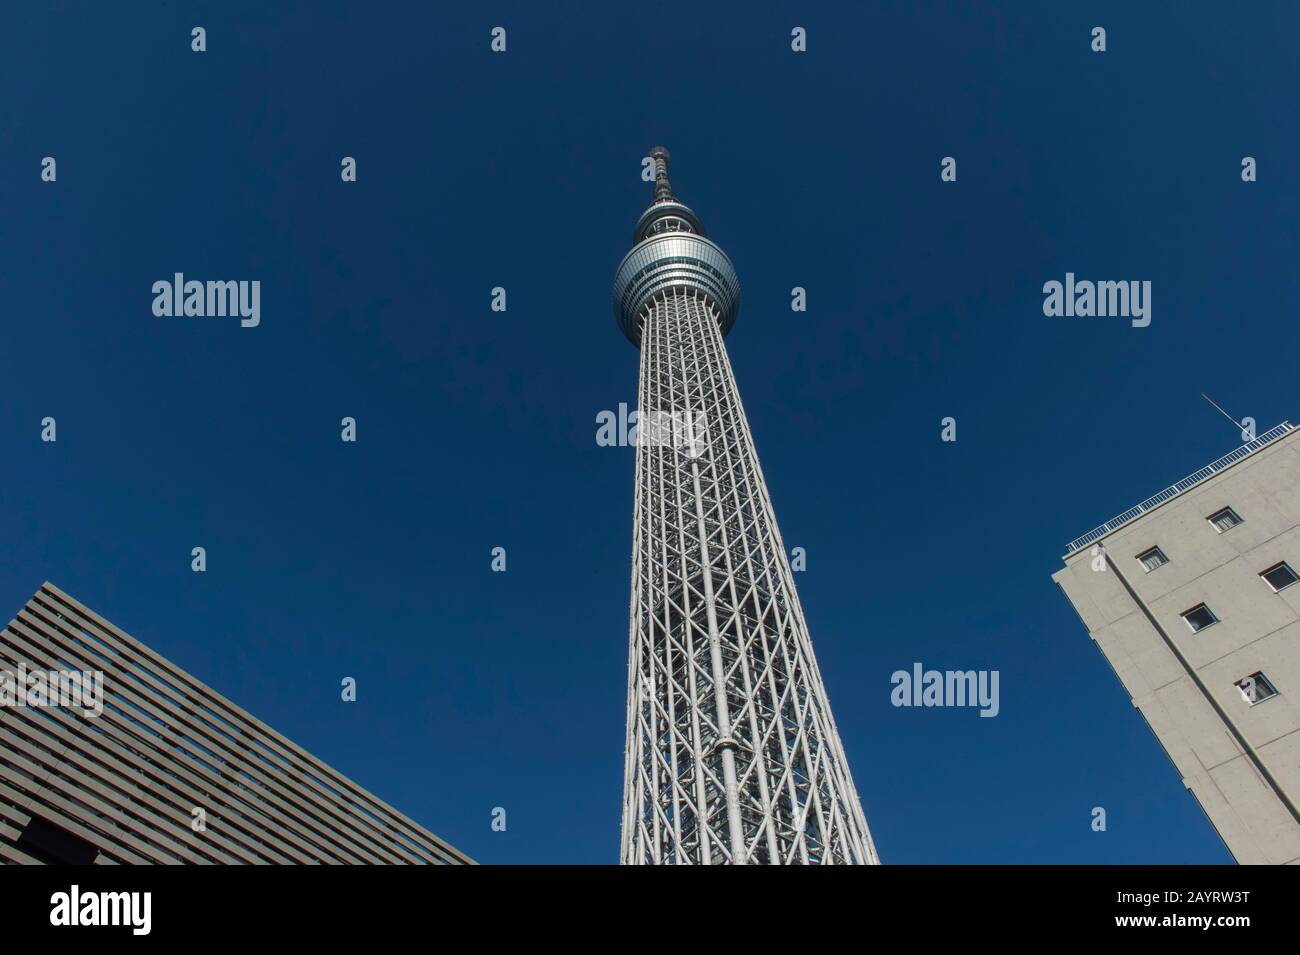 El Tokyo Skytree es la torre más alta del mundo y es una torre de radiodifusión, restaurante y observación en Sumida, Tokio, Japón. Foto de stock